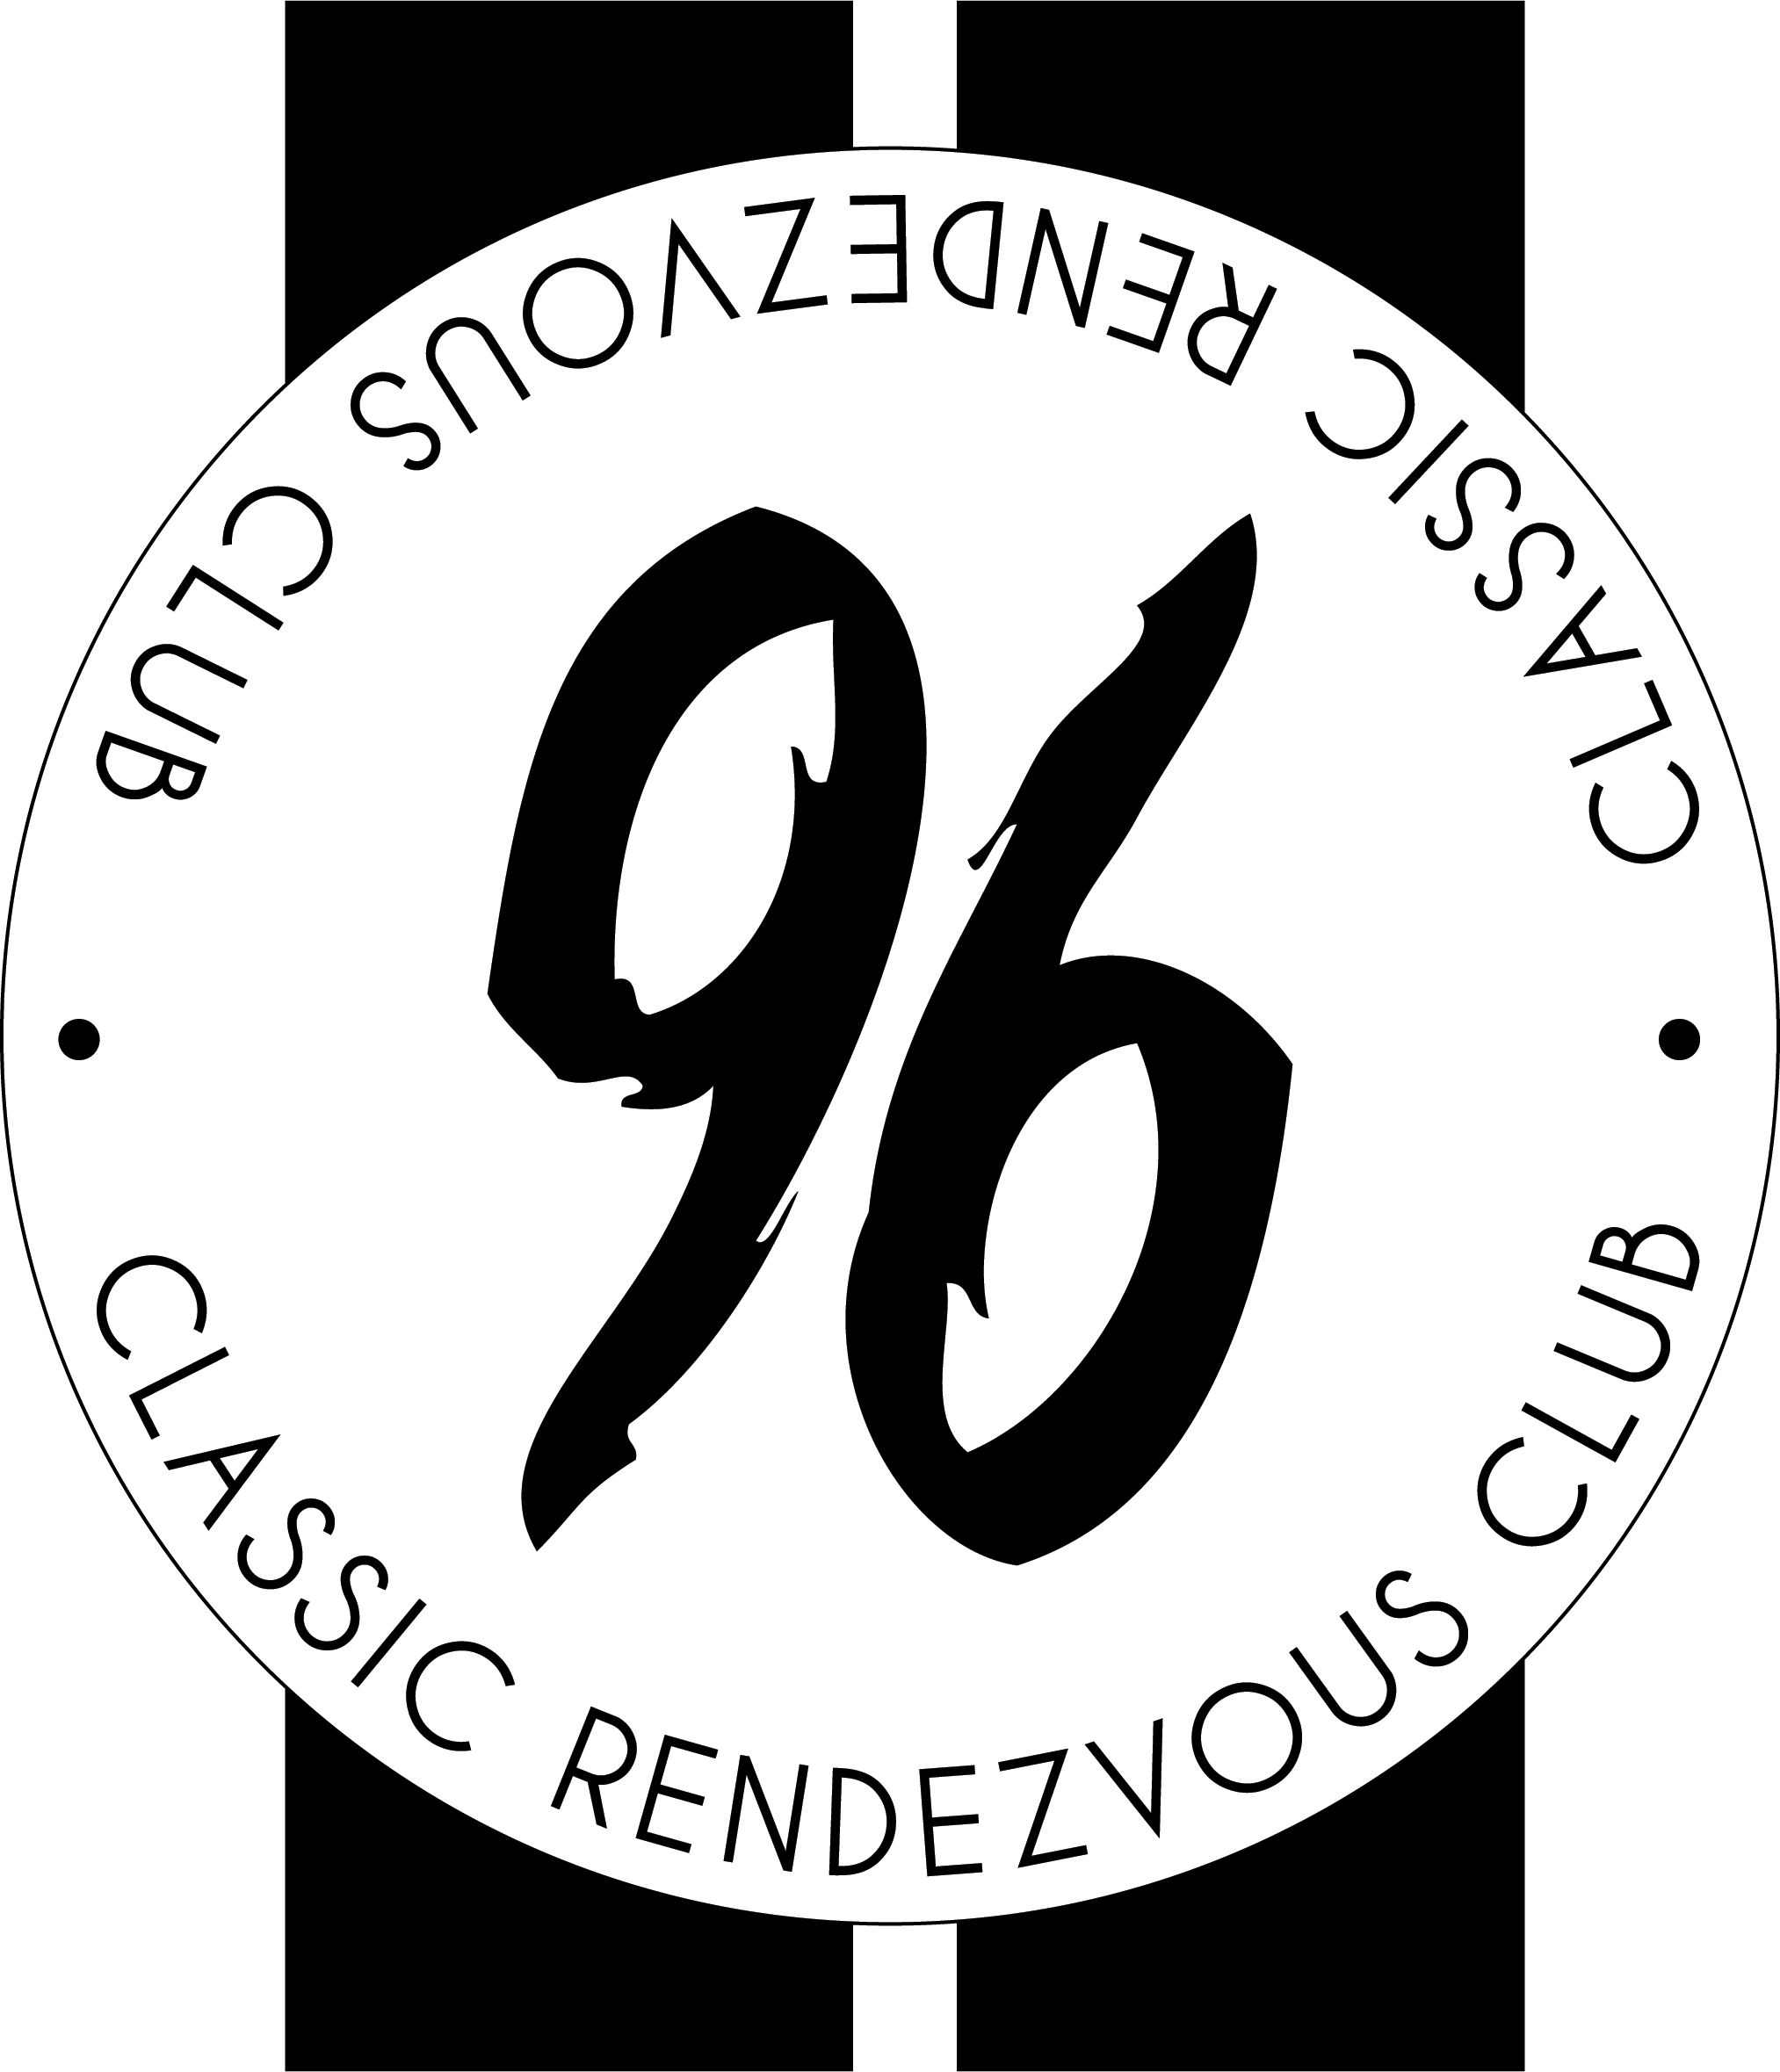 96 Club logo